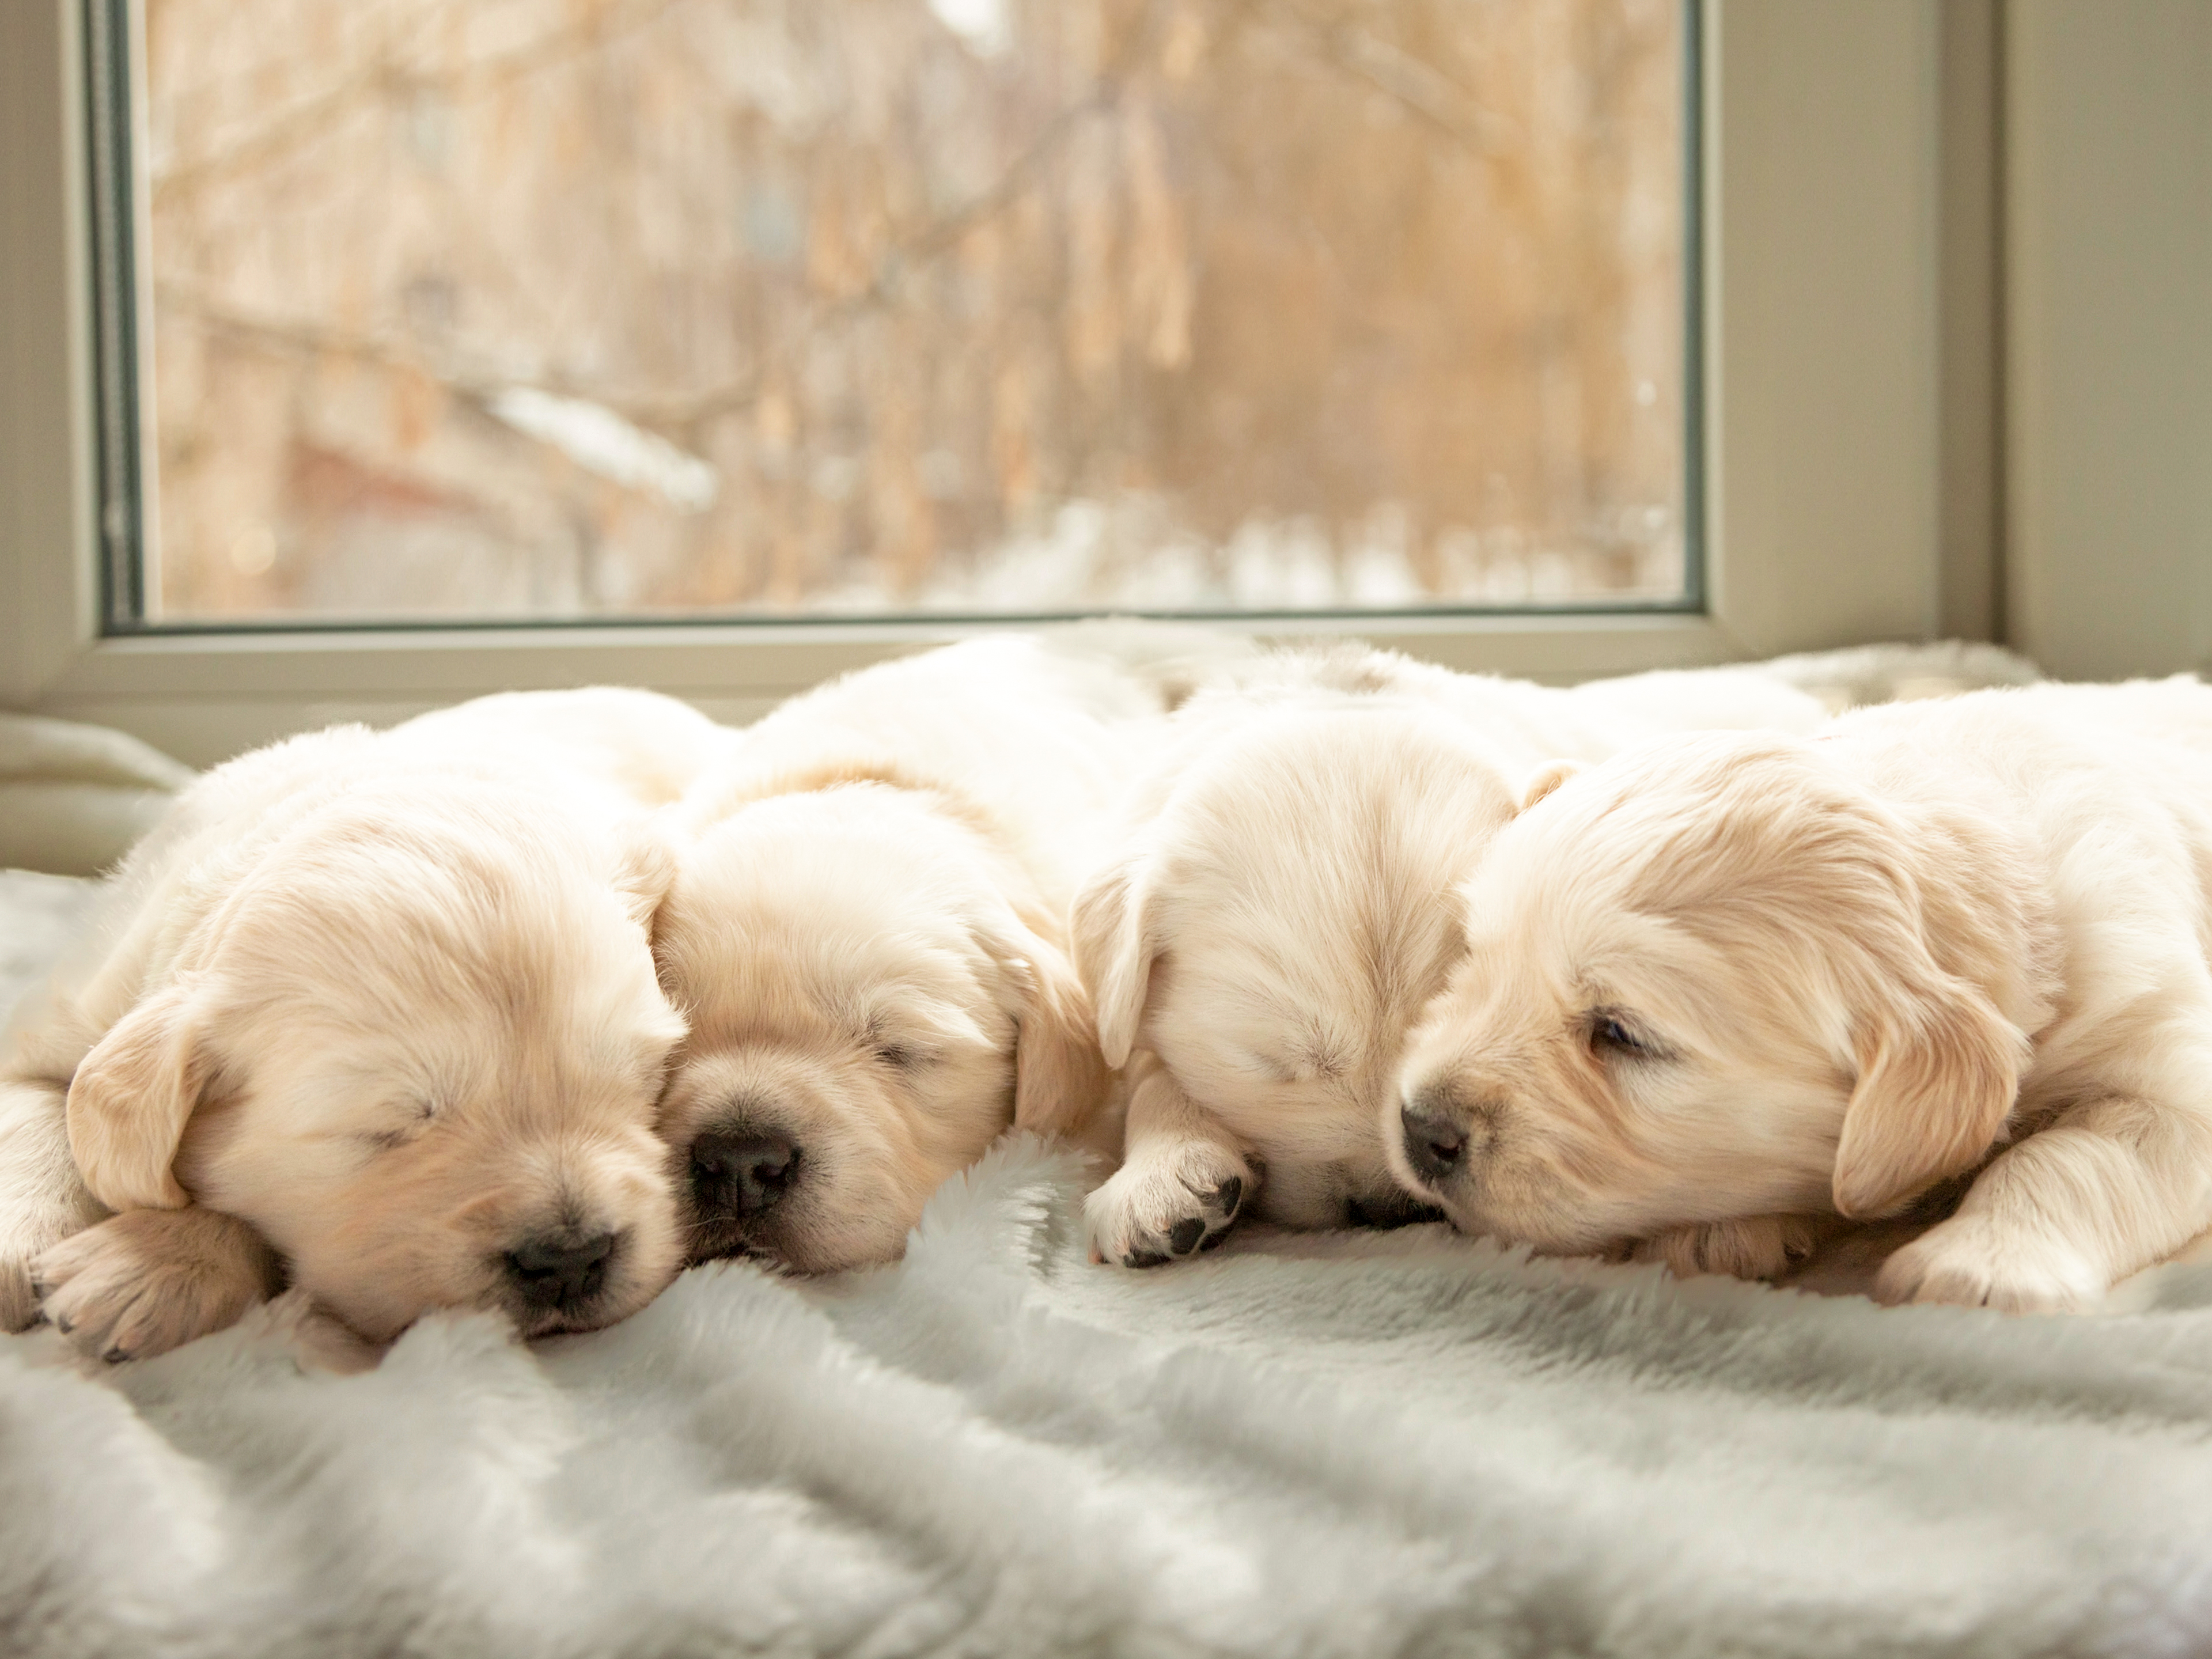 Vier schlafende Golden-Retriever-Welpen liegen nebeneinander auf einer hellgrauen Flauschdecke vor einem Fenster.